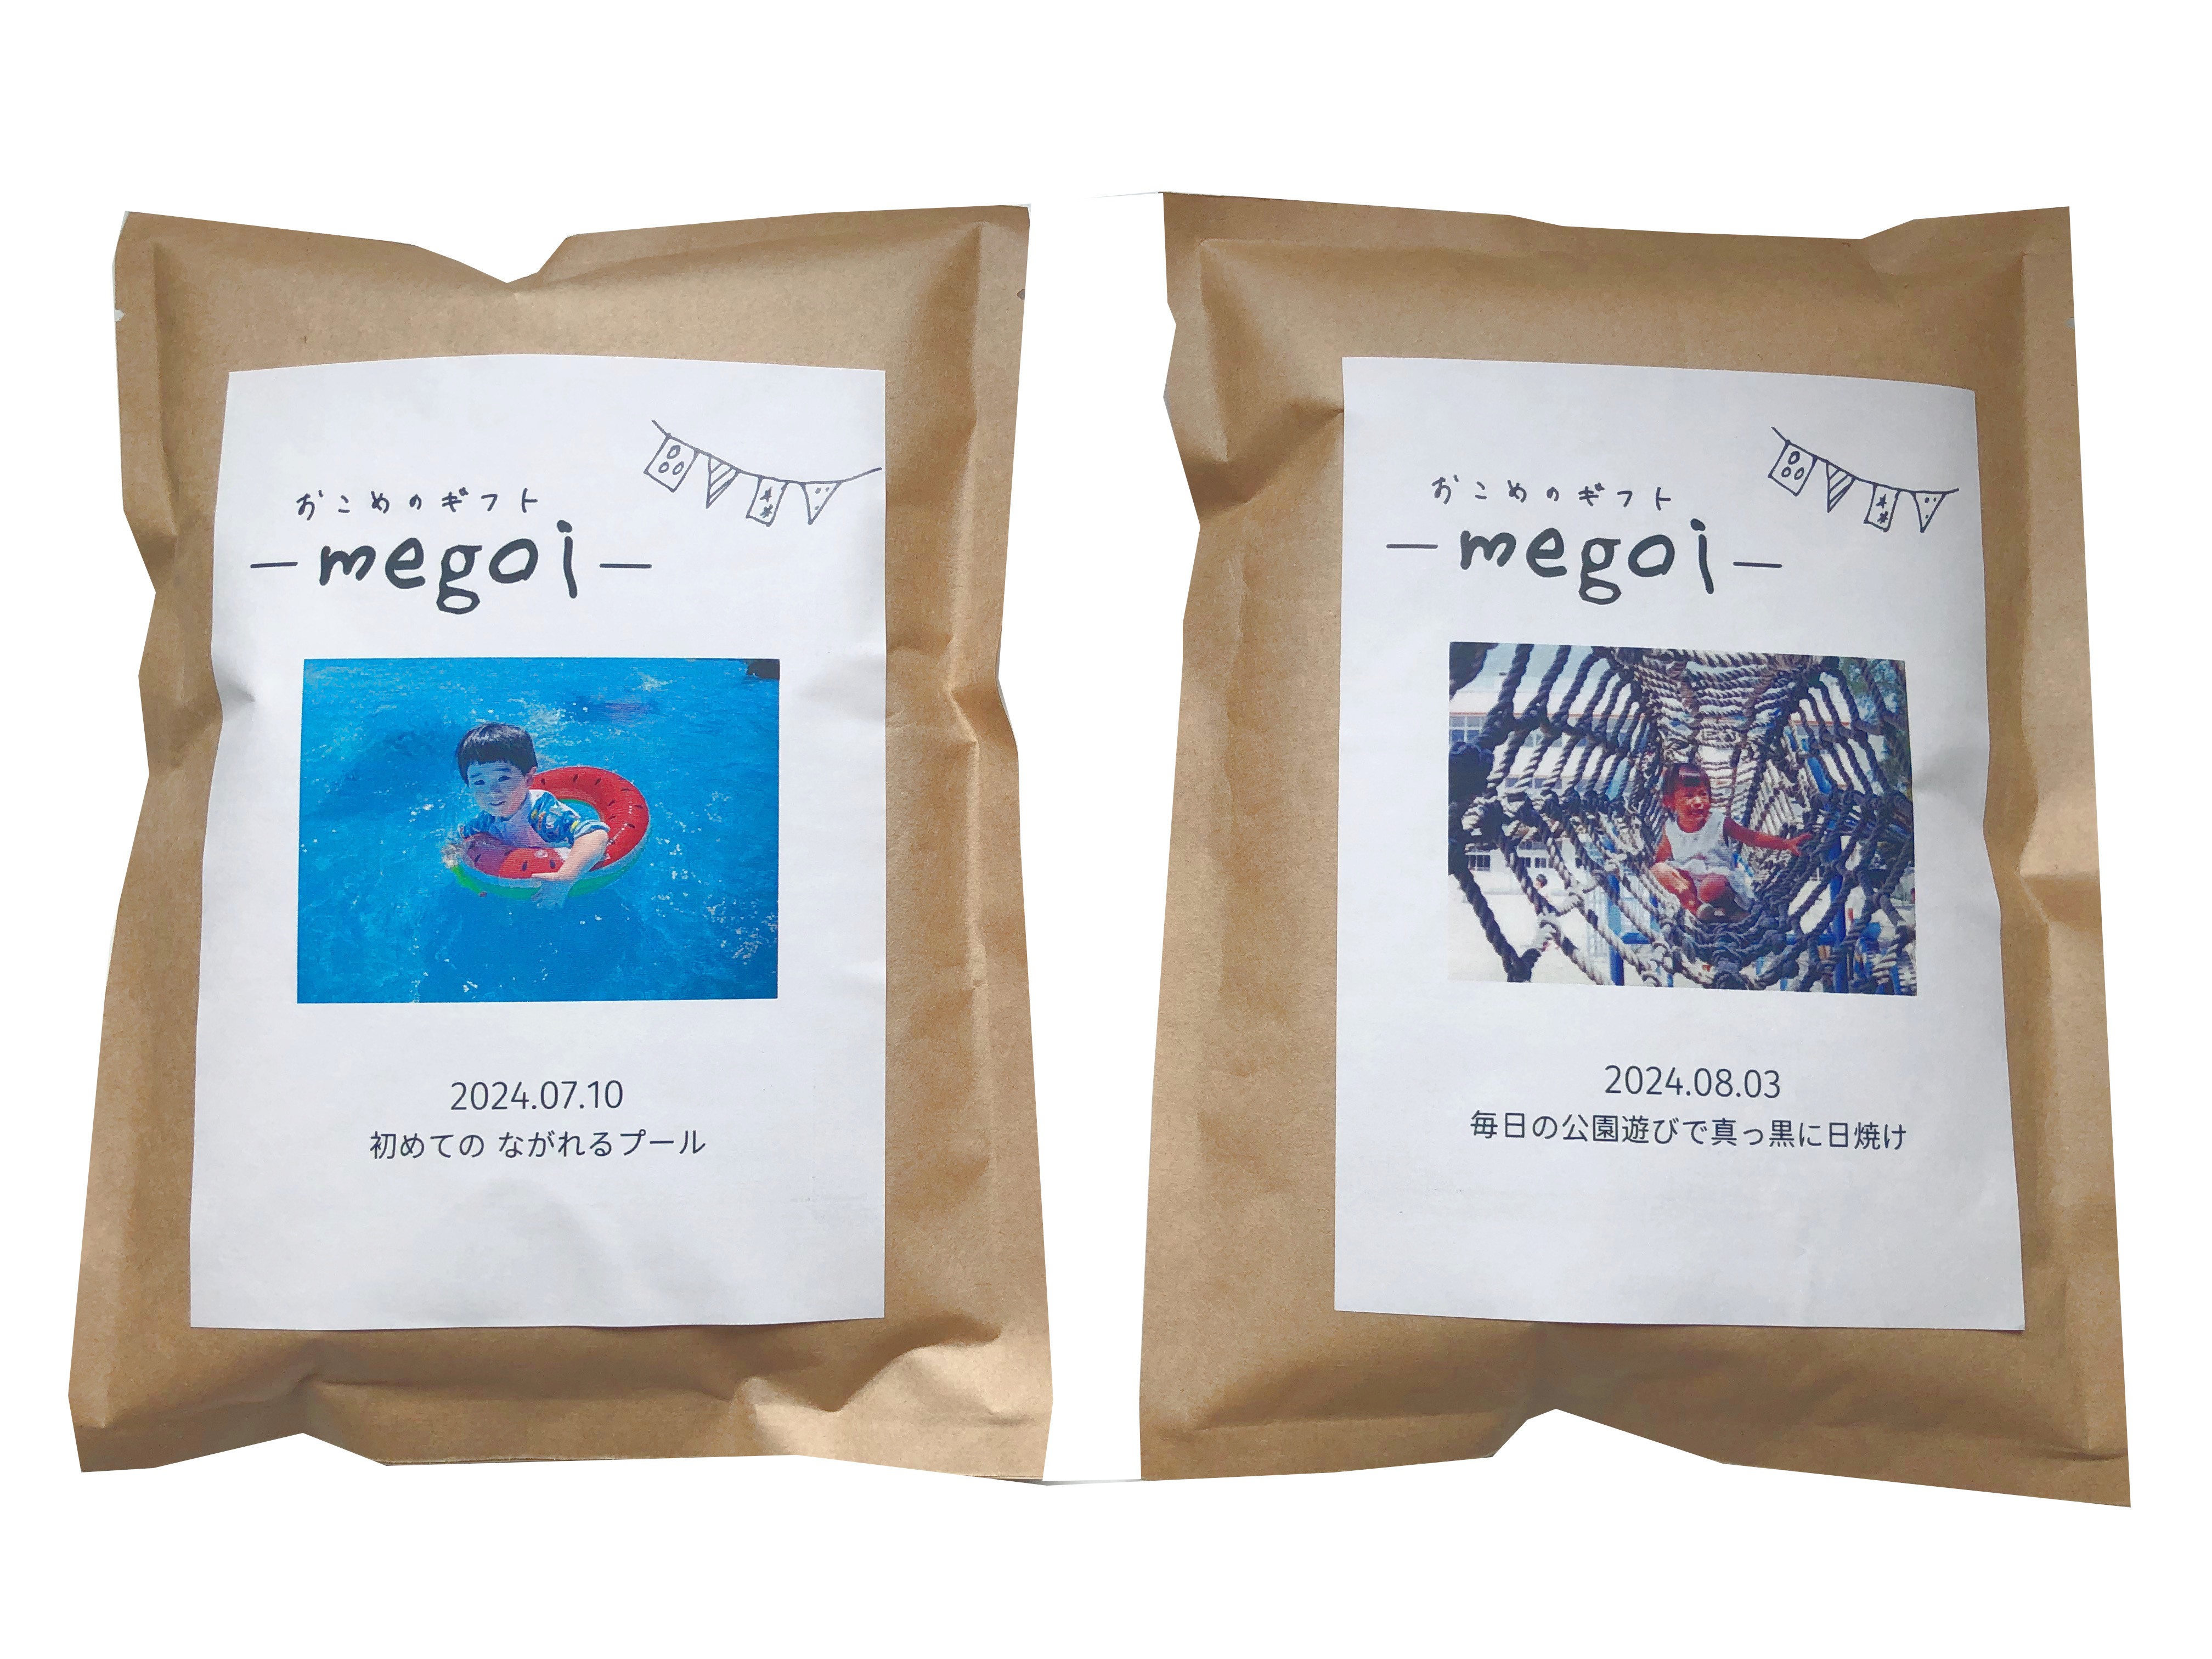 着日指定可]南魚沼産コシヒカリ2合[お米の成長報告ギフト -megoi- 2合(300g)×2袋